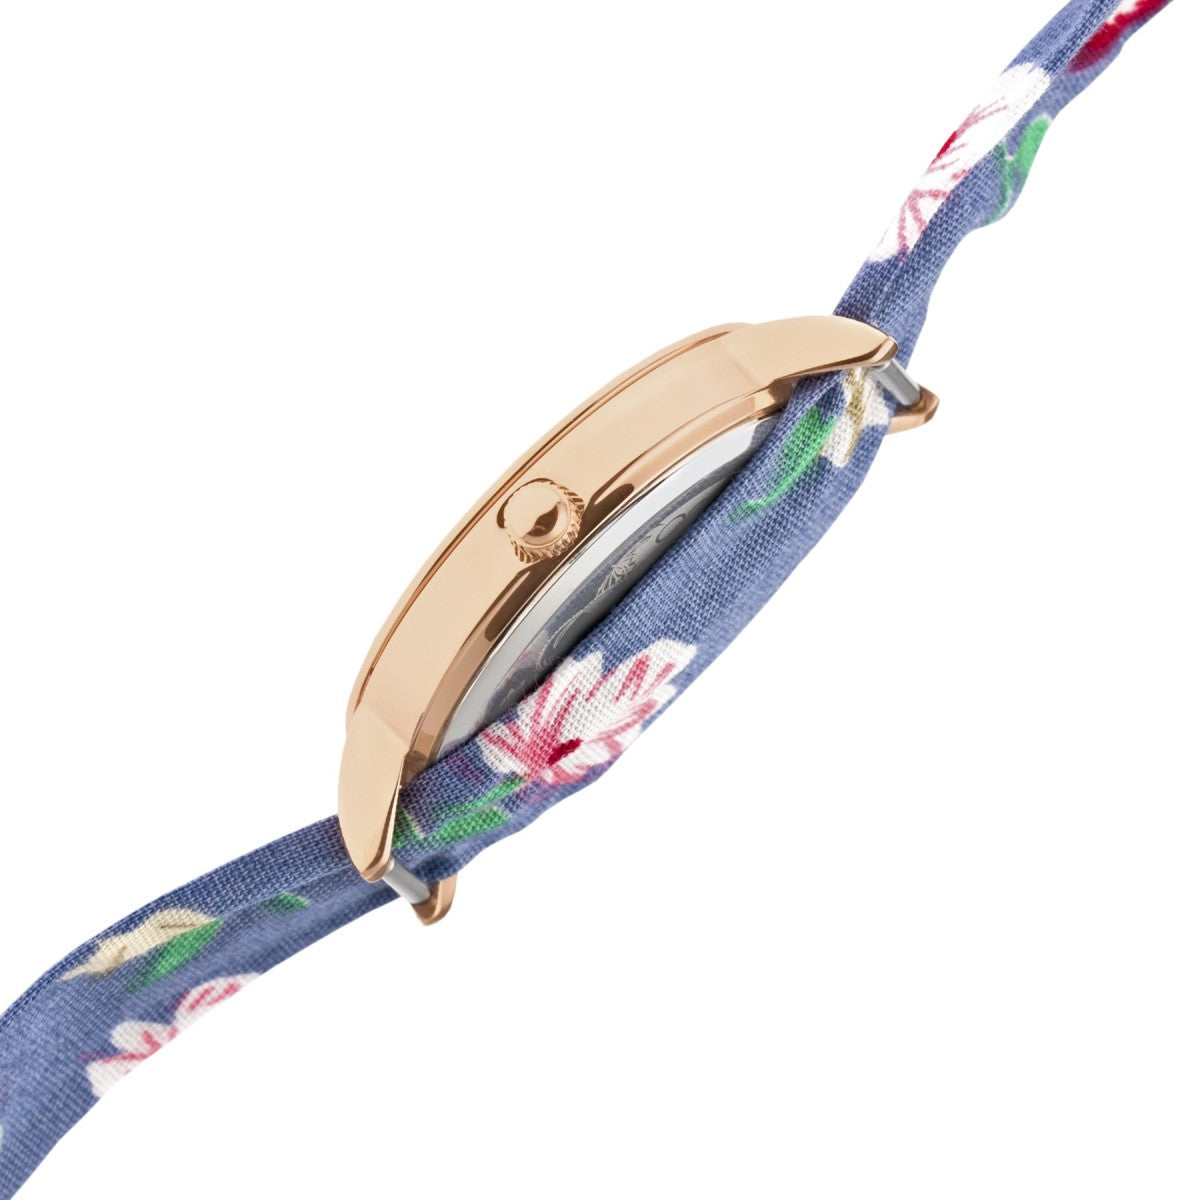 Boum Arc Floral-Print Wrap Watch - Rose Gold/Blue - BOUBM5004